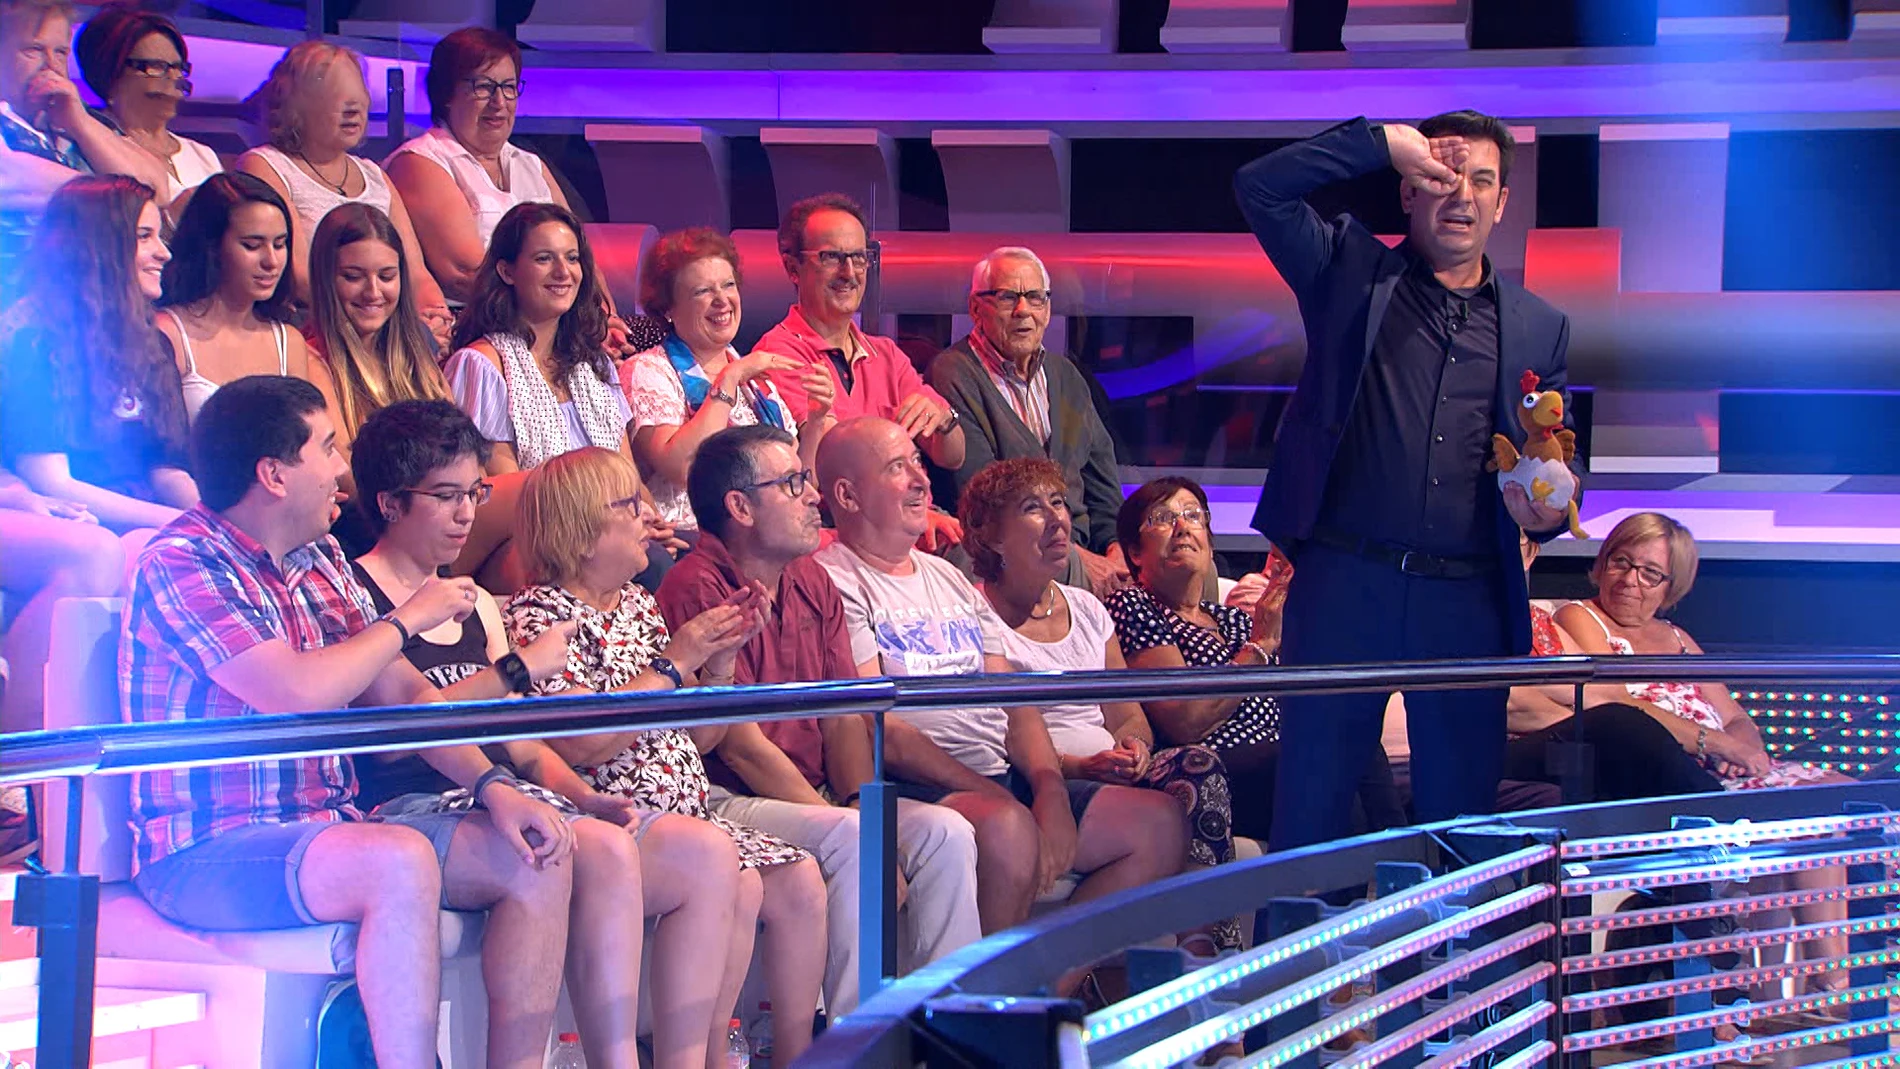 Una señora del público a Arturo Valls: "¡Con el sueño que tengo y me pides que   haga ese gesto!"